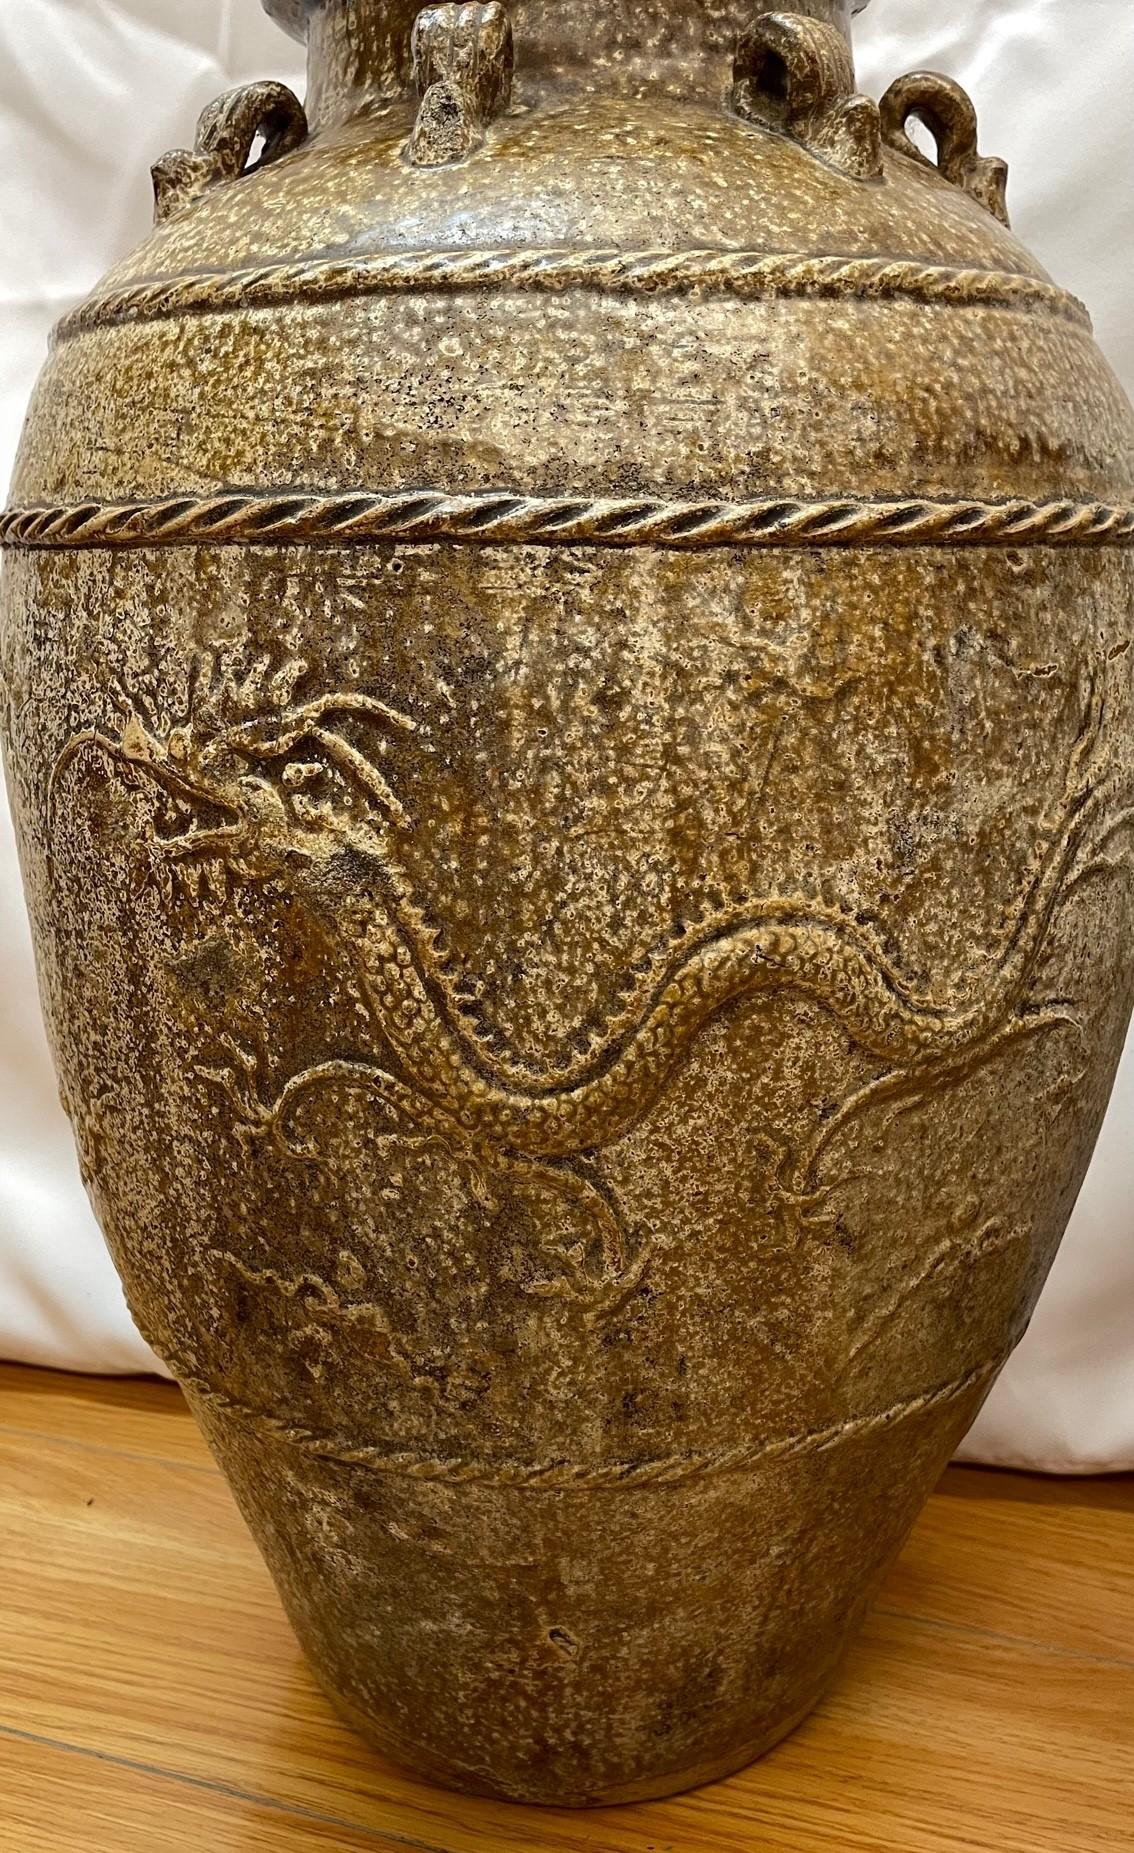 Coppia di contenitori cinesi firmati Martaban (vasi per il vino) con terracotta marrone 

xVIII secolo 

12x12x20